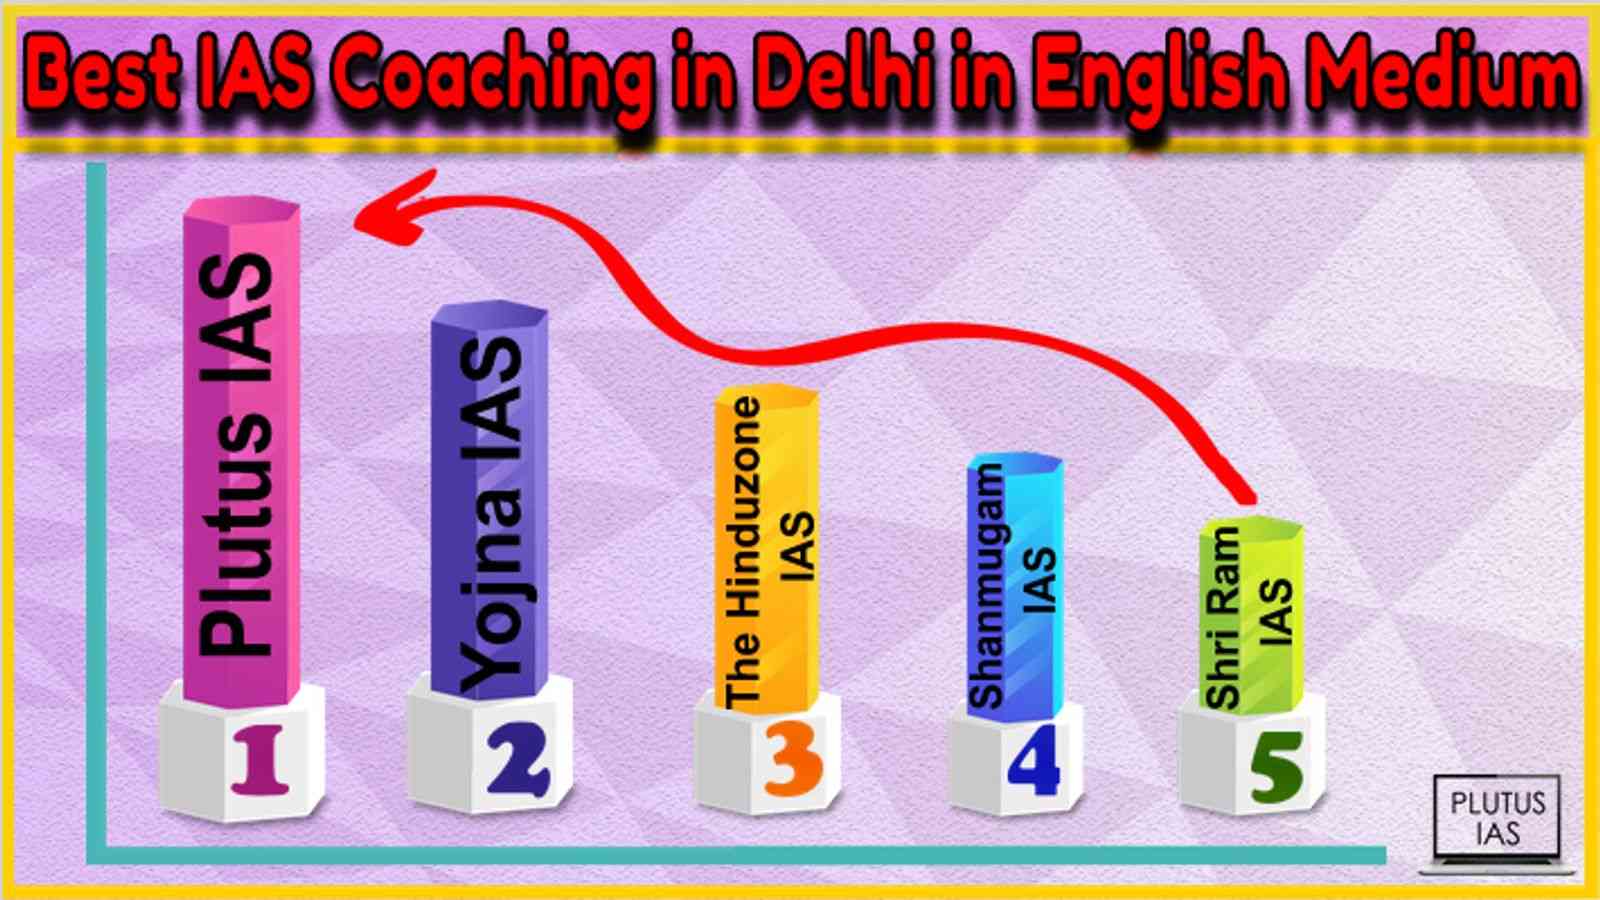 Best IAS Coaching in Delhi in English Medium